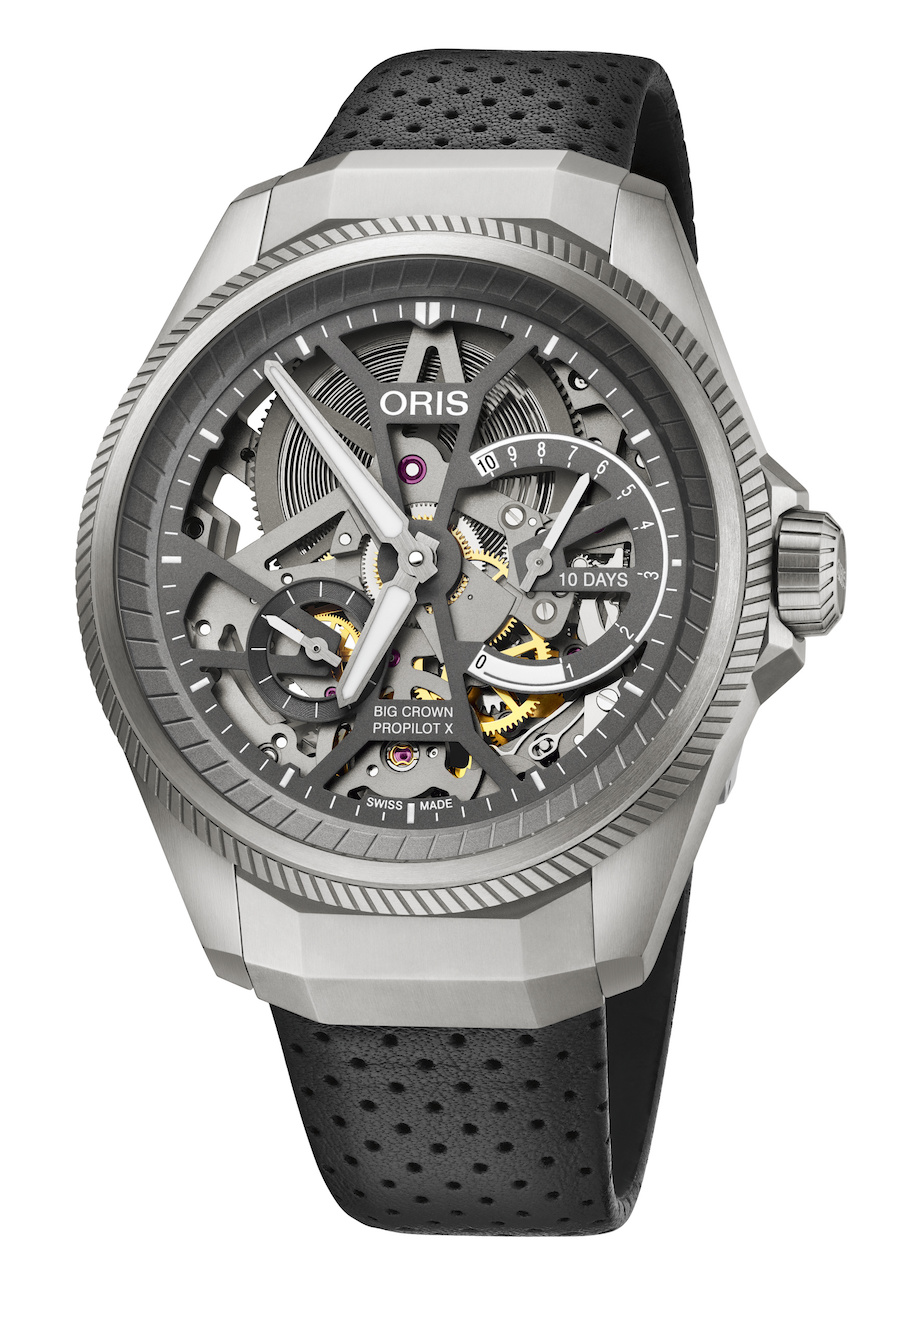 Oris Big Crown ProPilot X Calibre 115 watch